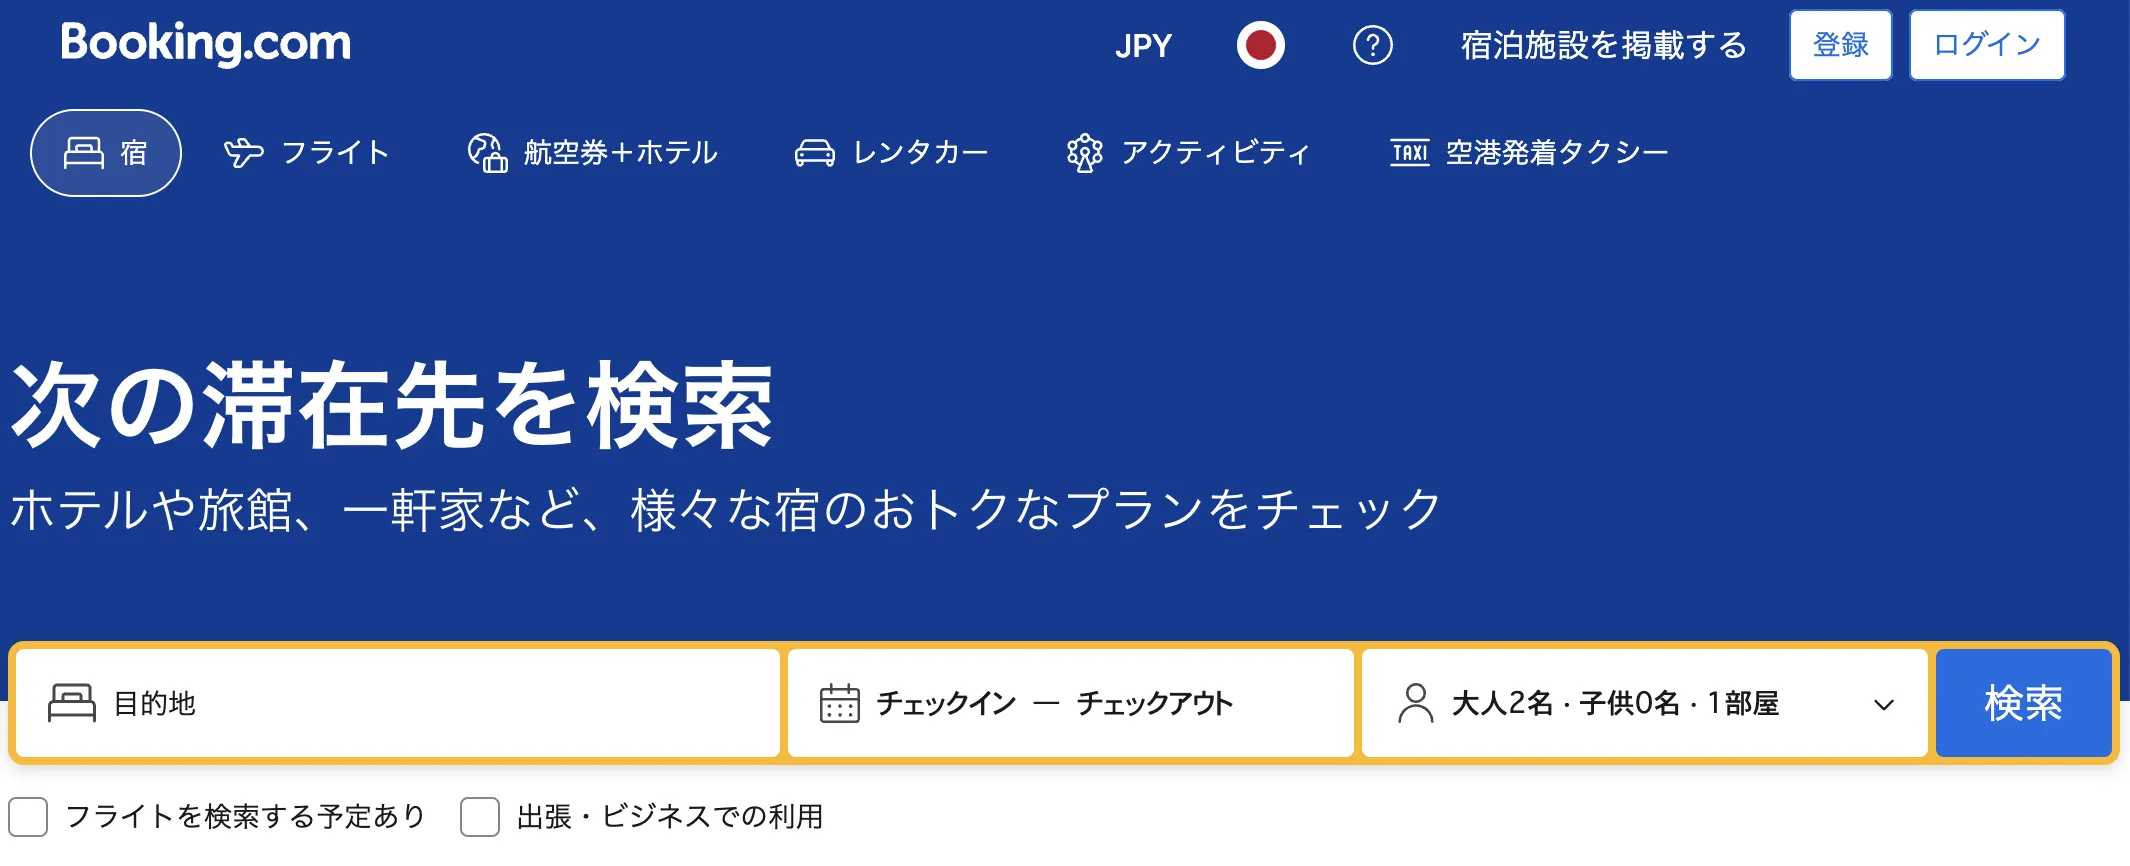 UI/UXでの フィルター 機能【入門ガイド】 - Booking.com